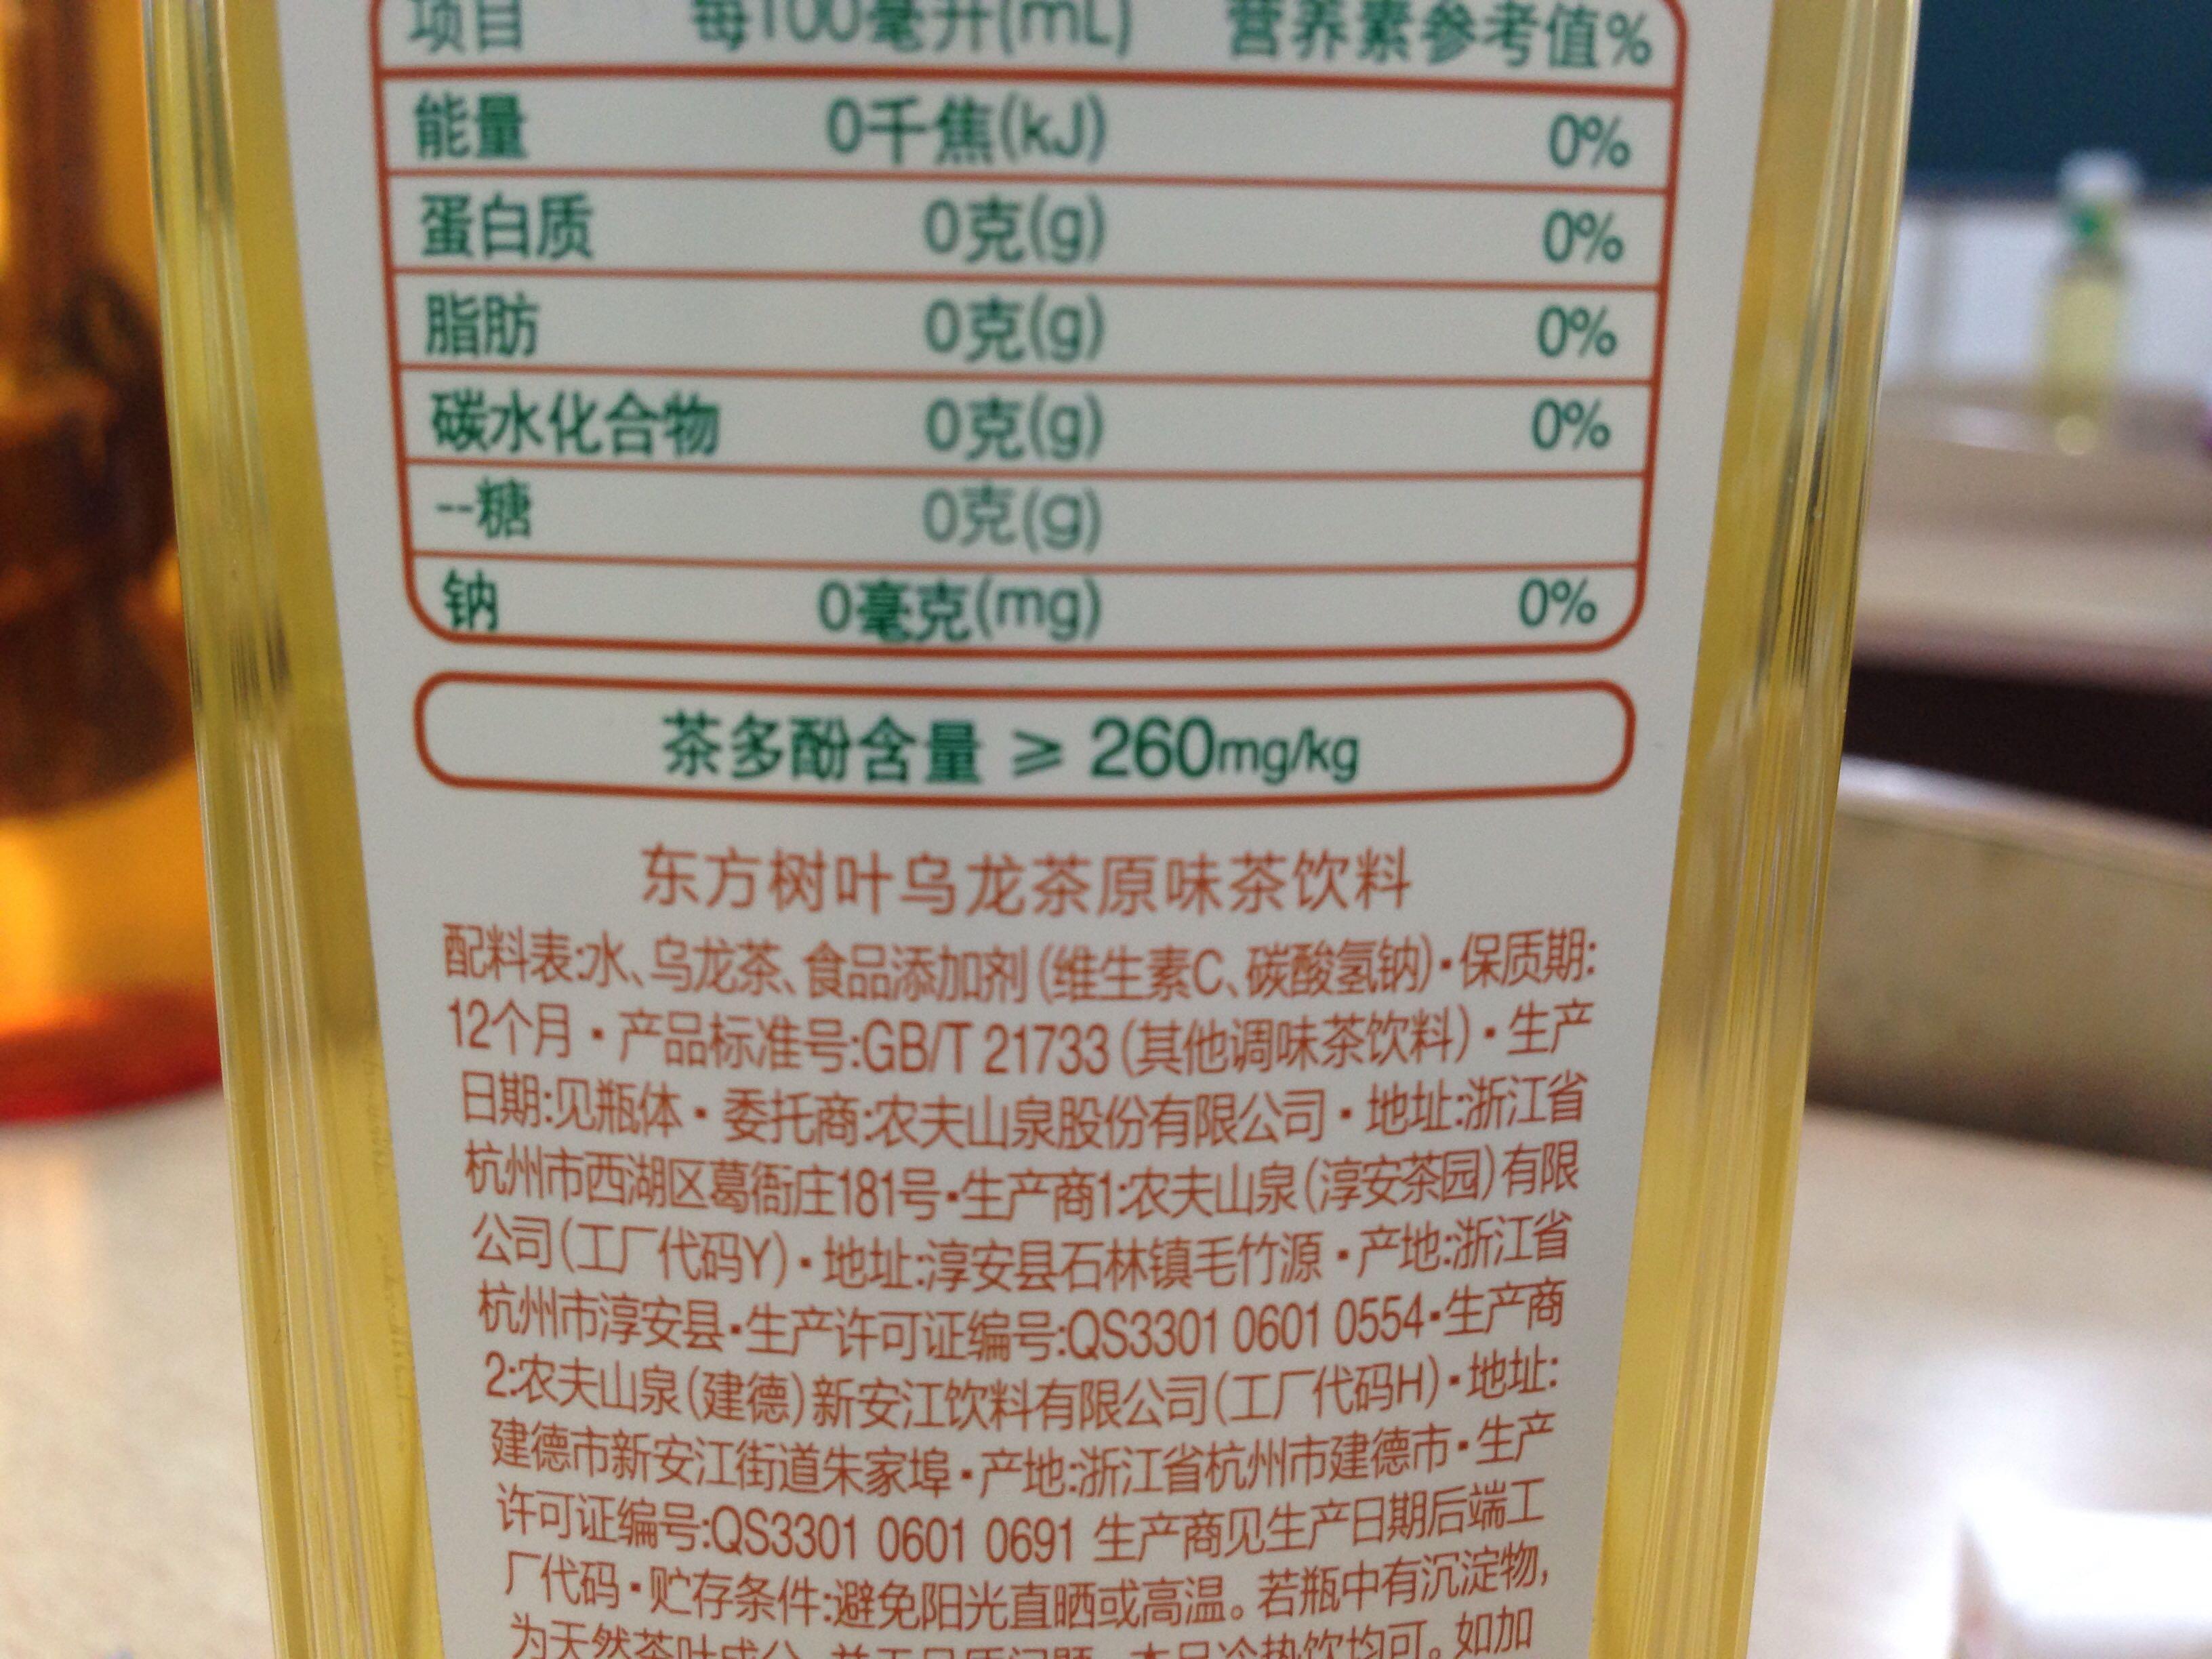 如图,买的东方树叶的乌龙茶饮料,上面写着钠0毫克,下面写着添加剂有